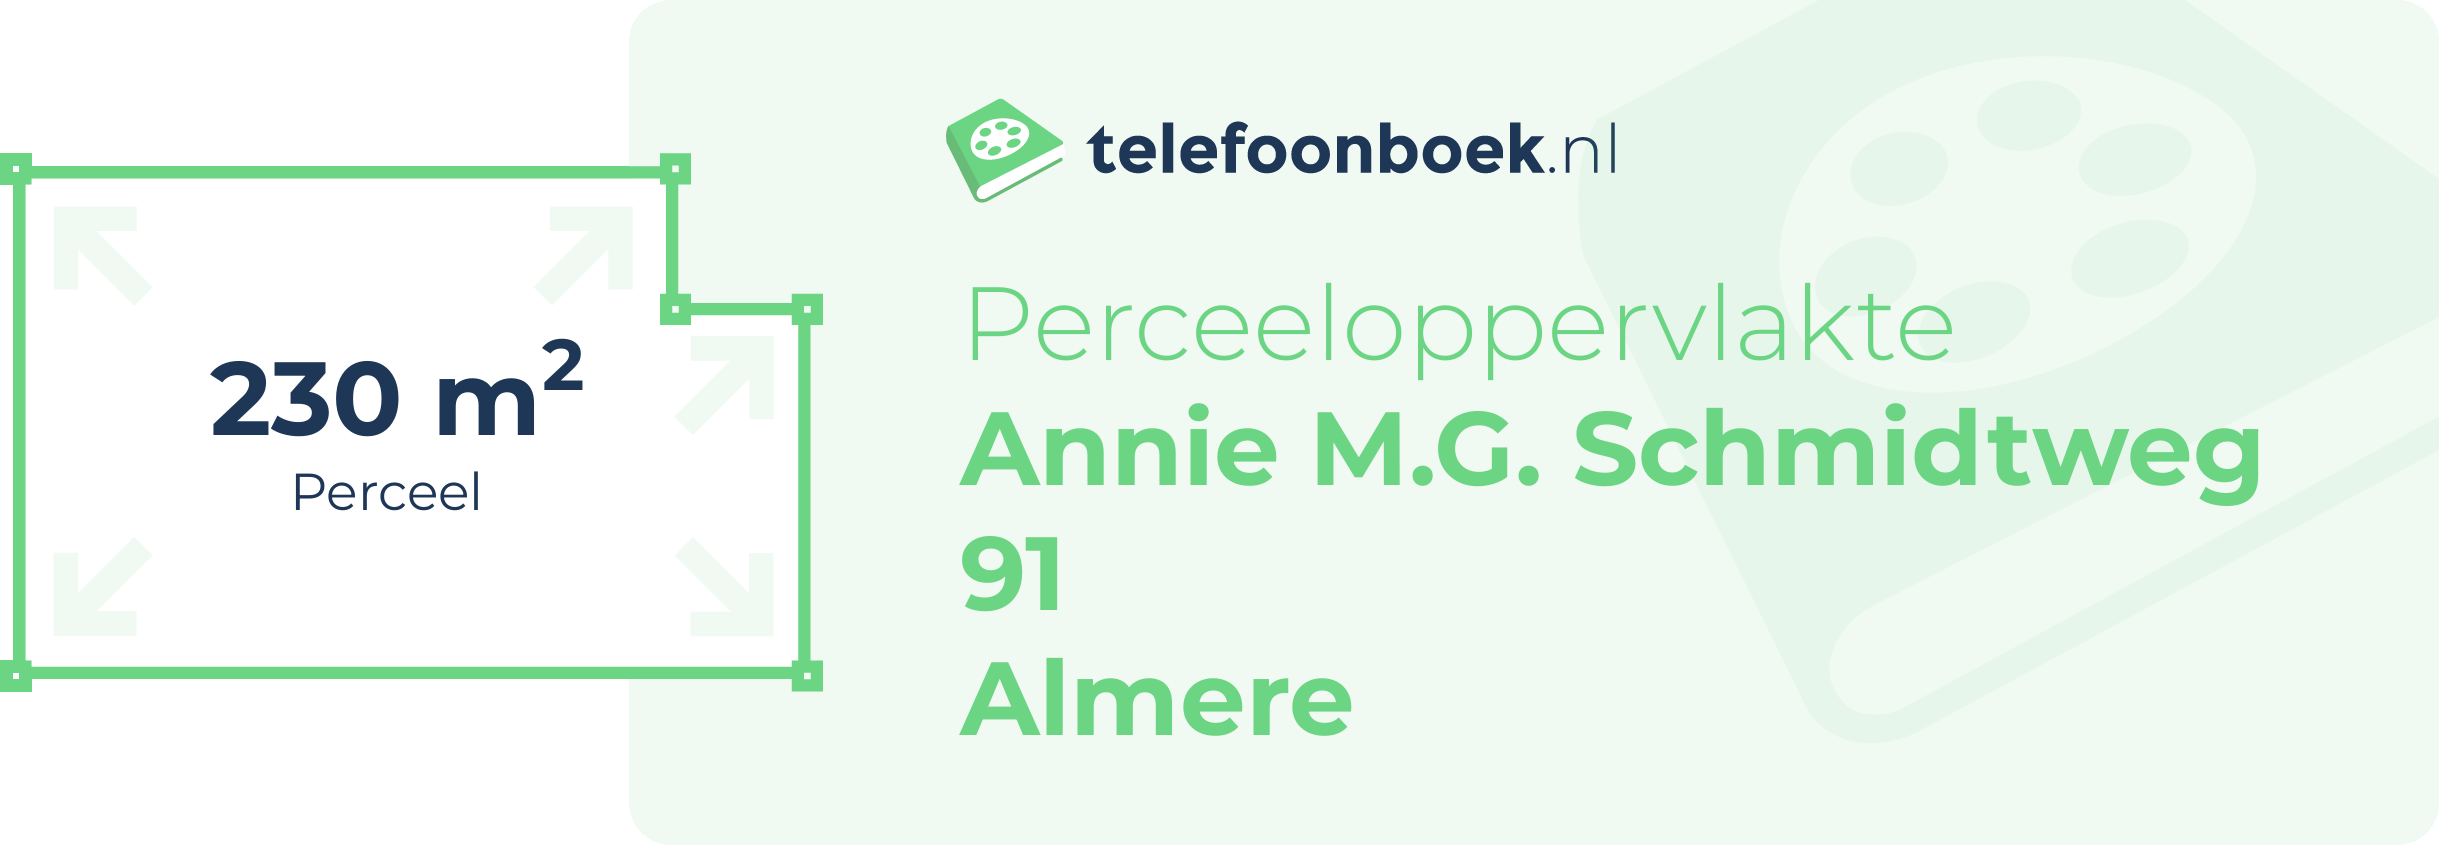 Perceeloppervlakte Annie M.G. Schmidtweg 91 Almere